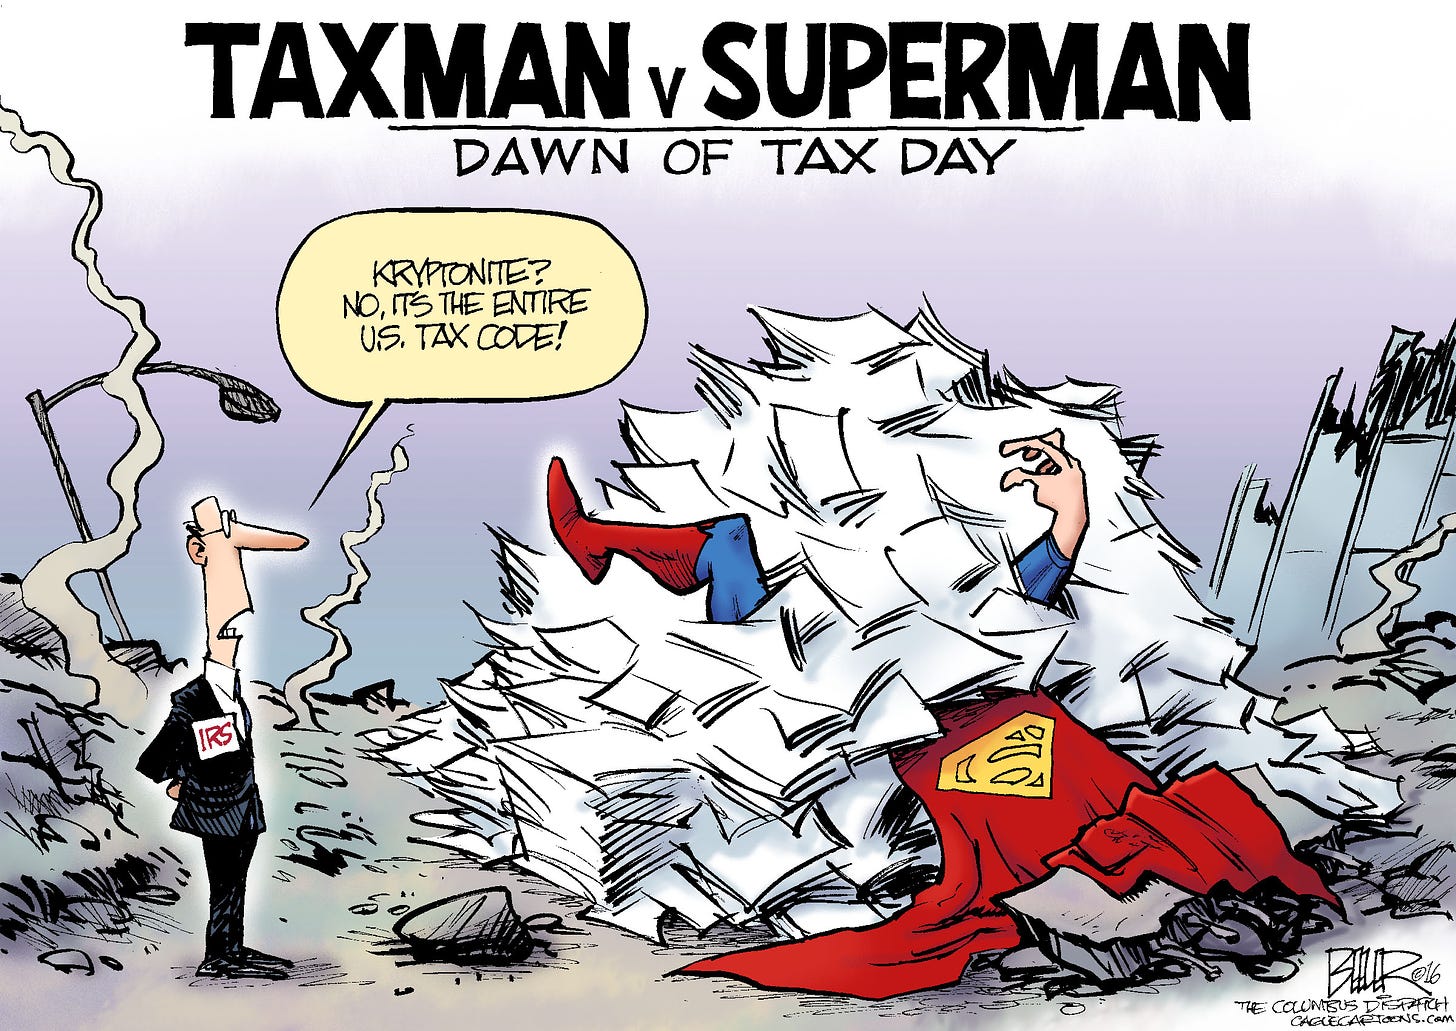 https://i1.wp.com/www.taxfacts.com/wp-content/gallery/tax-comics/superman-1.jpg